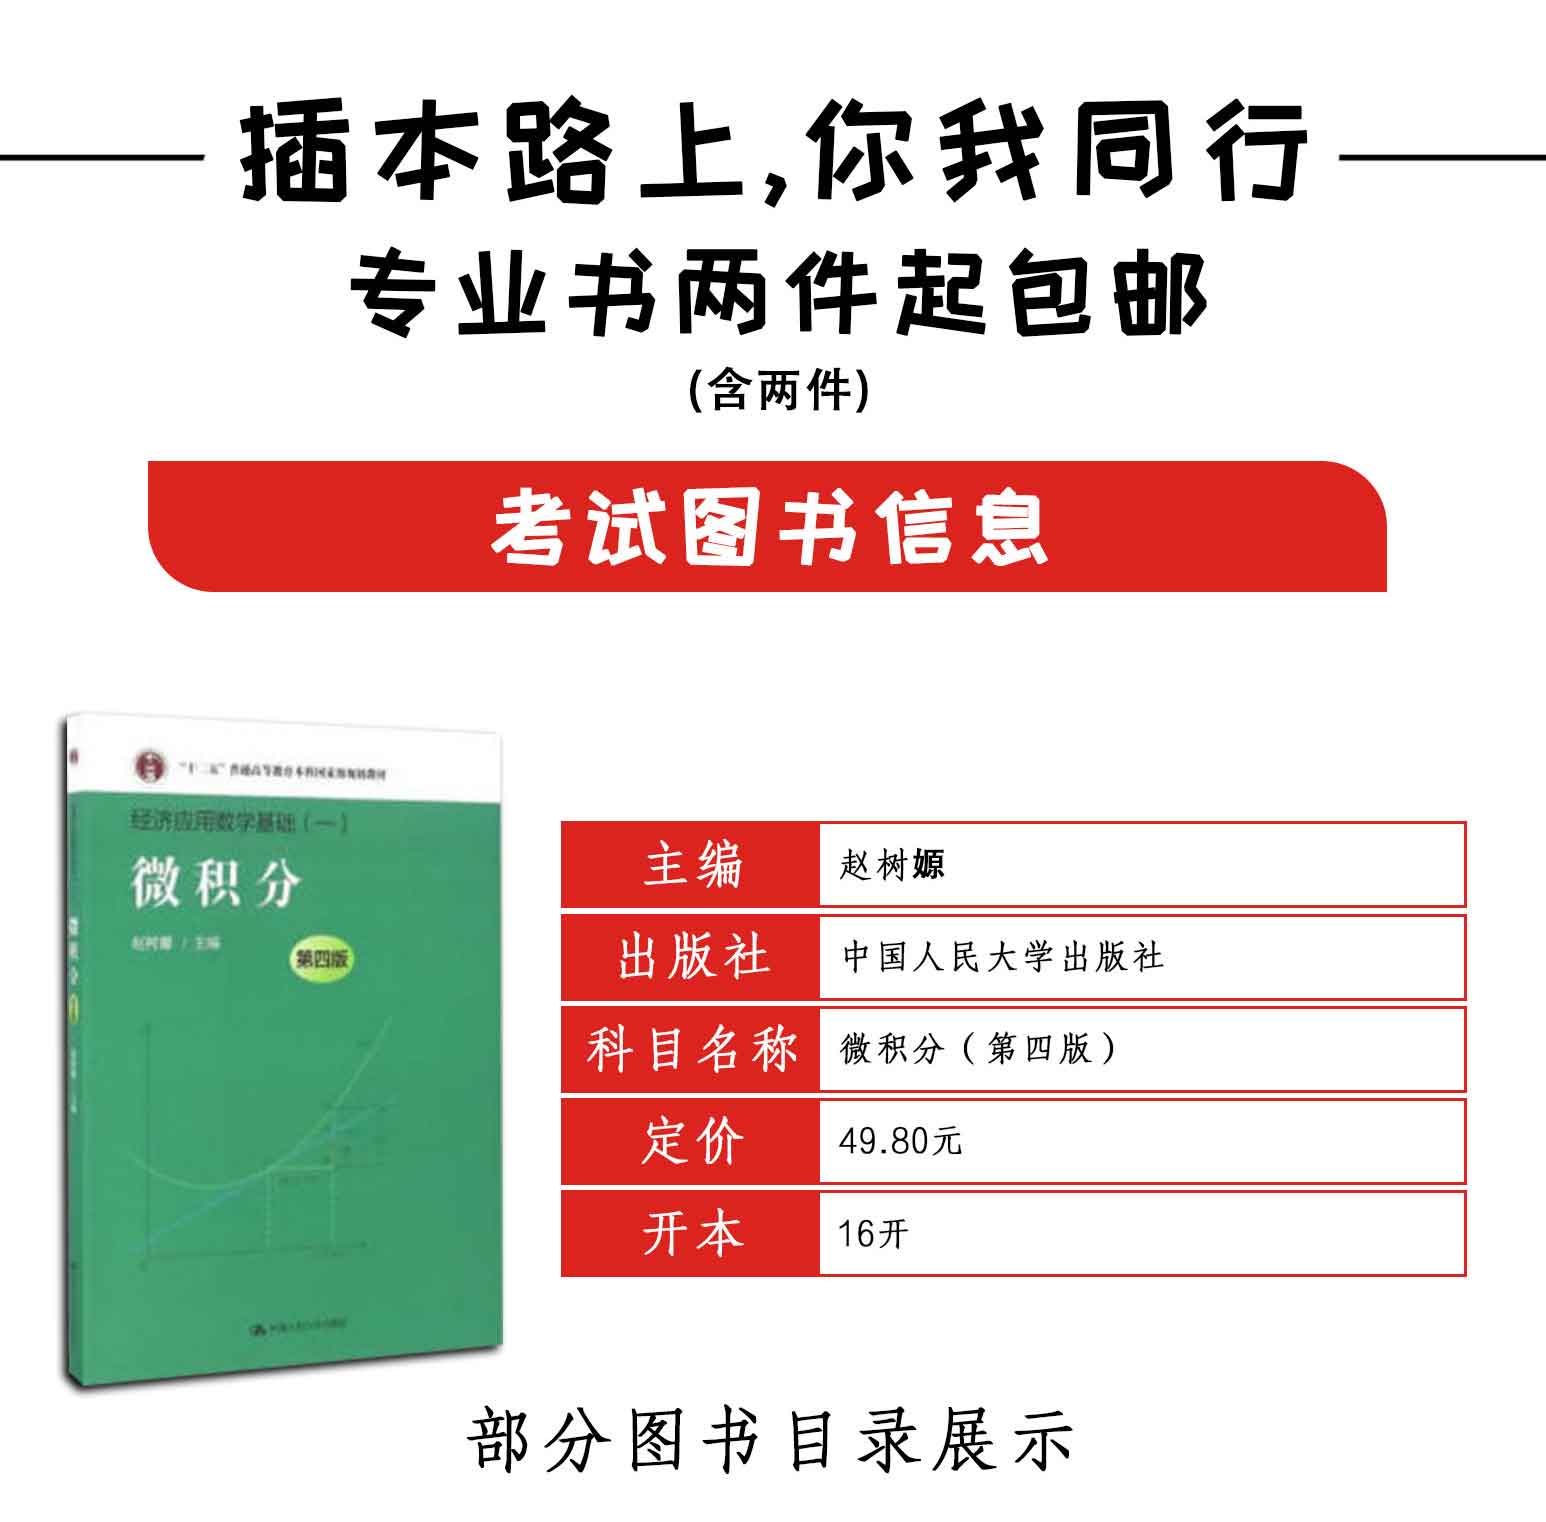 微积分(第四版),赵树嫄,中国人民大学出版社(图2)